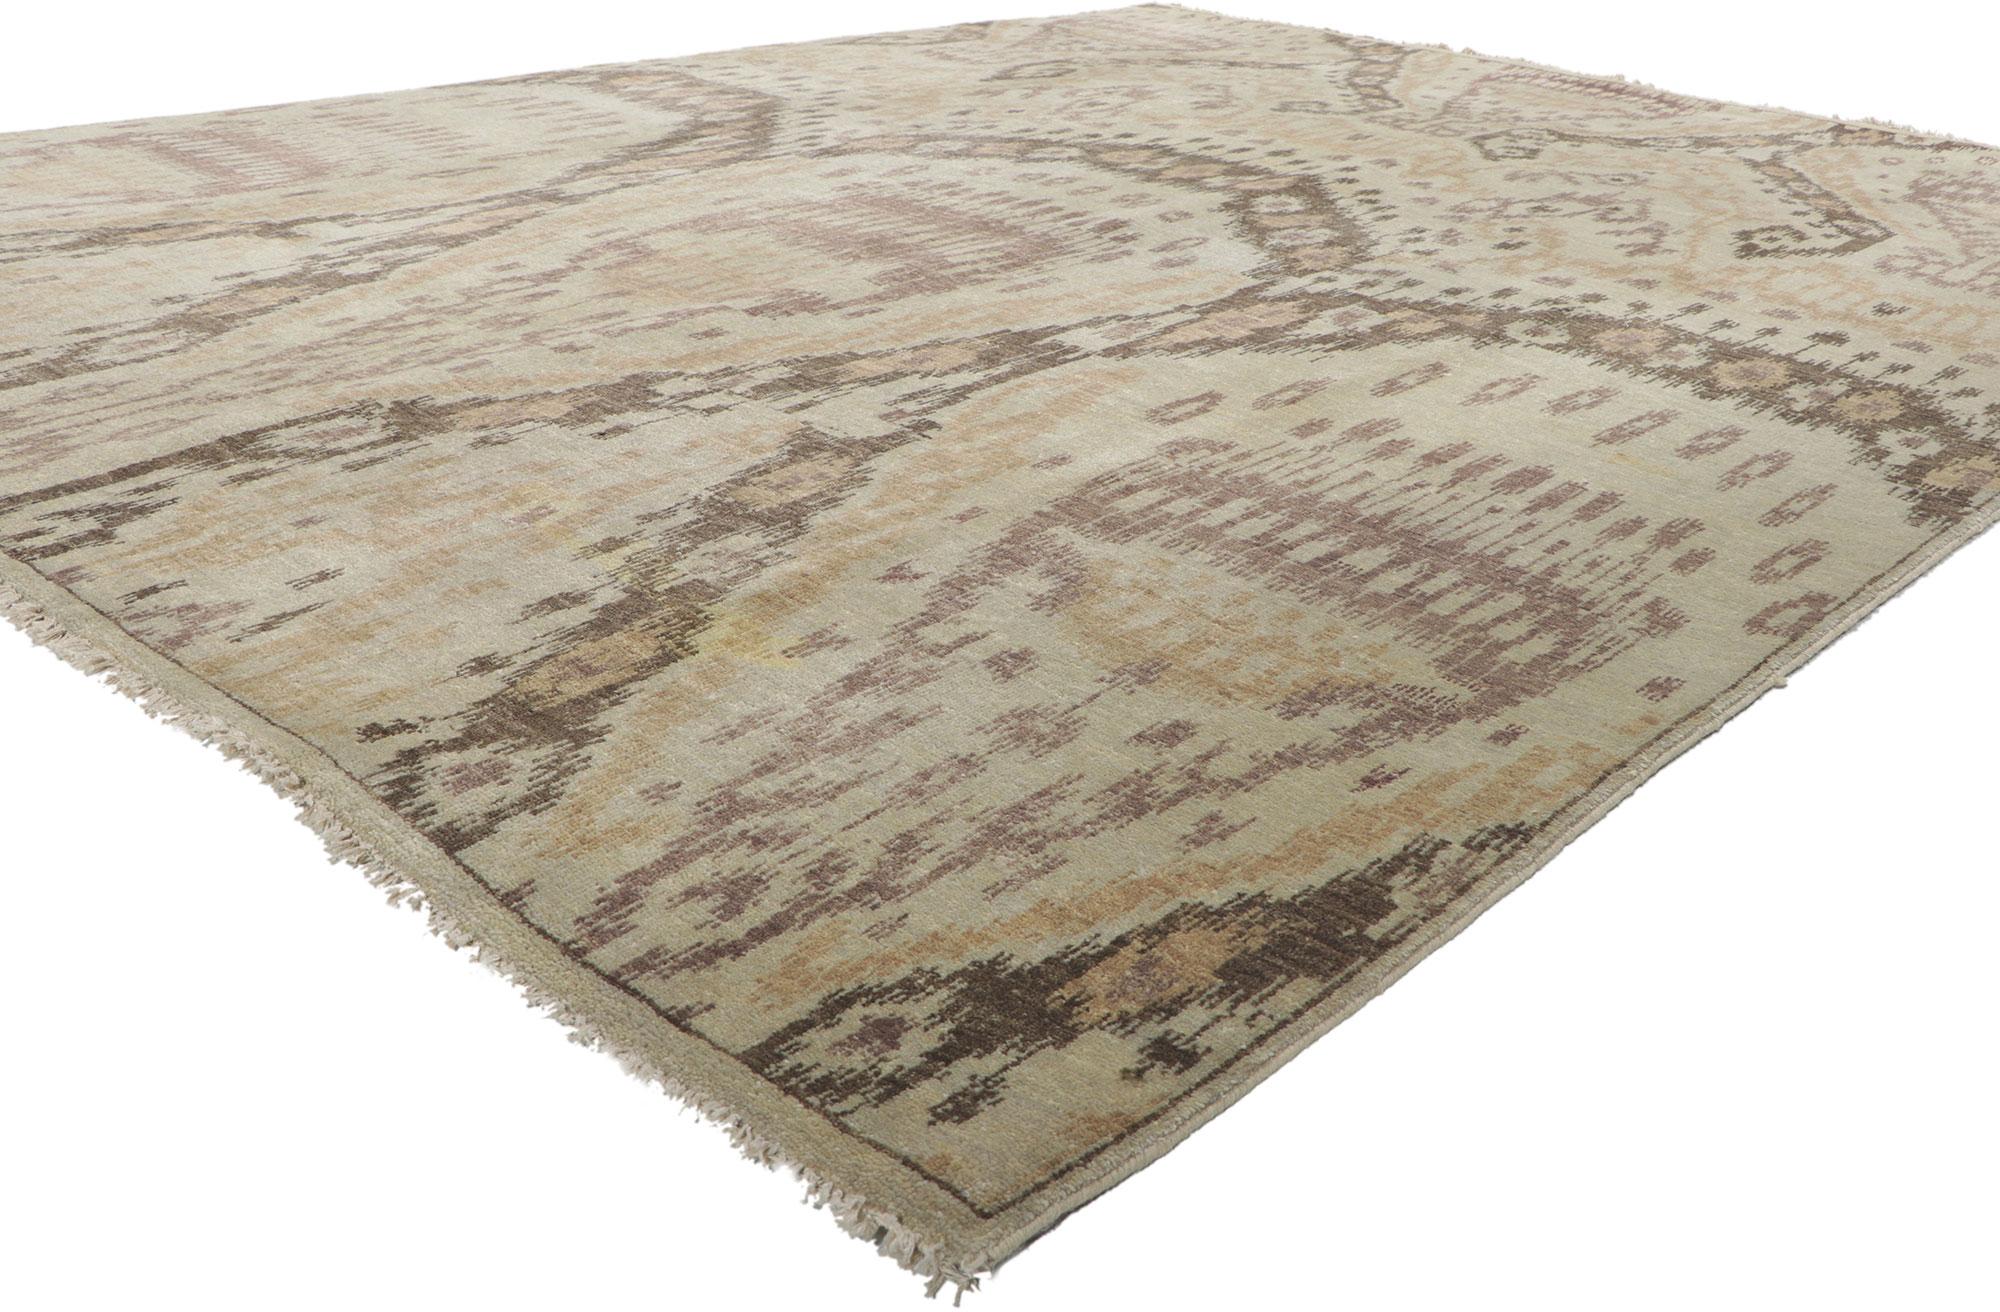 30046 New Transitional Ikat-Teppich, 07'09 x 10'00. Dieser handgeknüpfte Ikat-Teppich aus Wolle aus Indien besticht durch seine unglaubliche Detailtreue und Textur und ist eine faszinierende Vision gewebter Schönheit. Das auffällige Ikat-Muster und